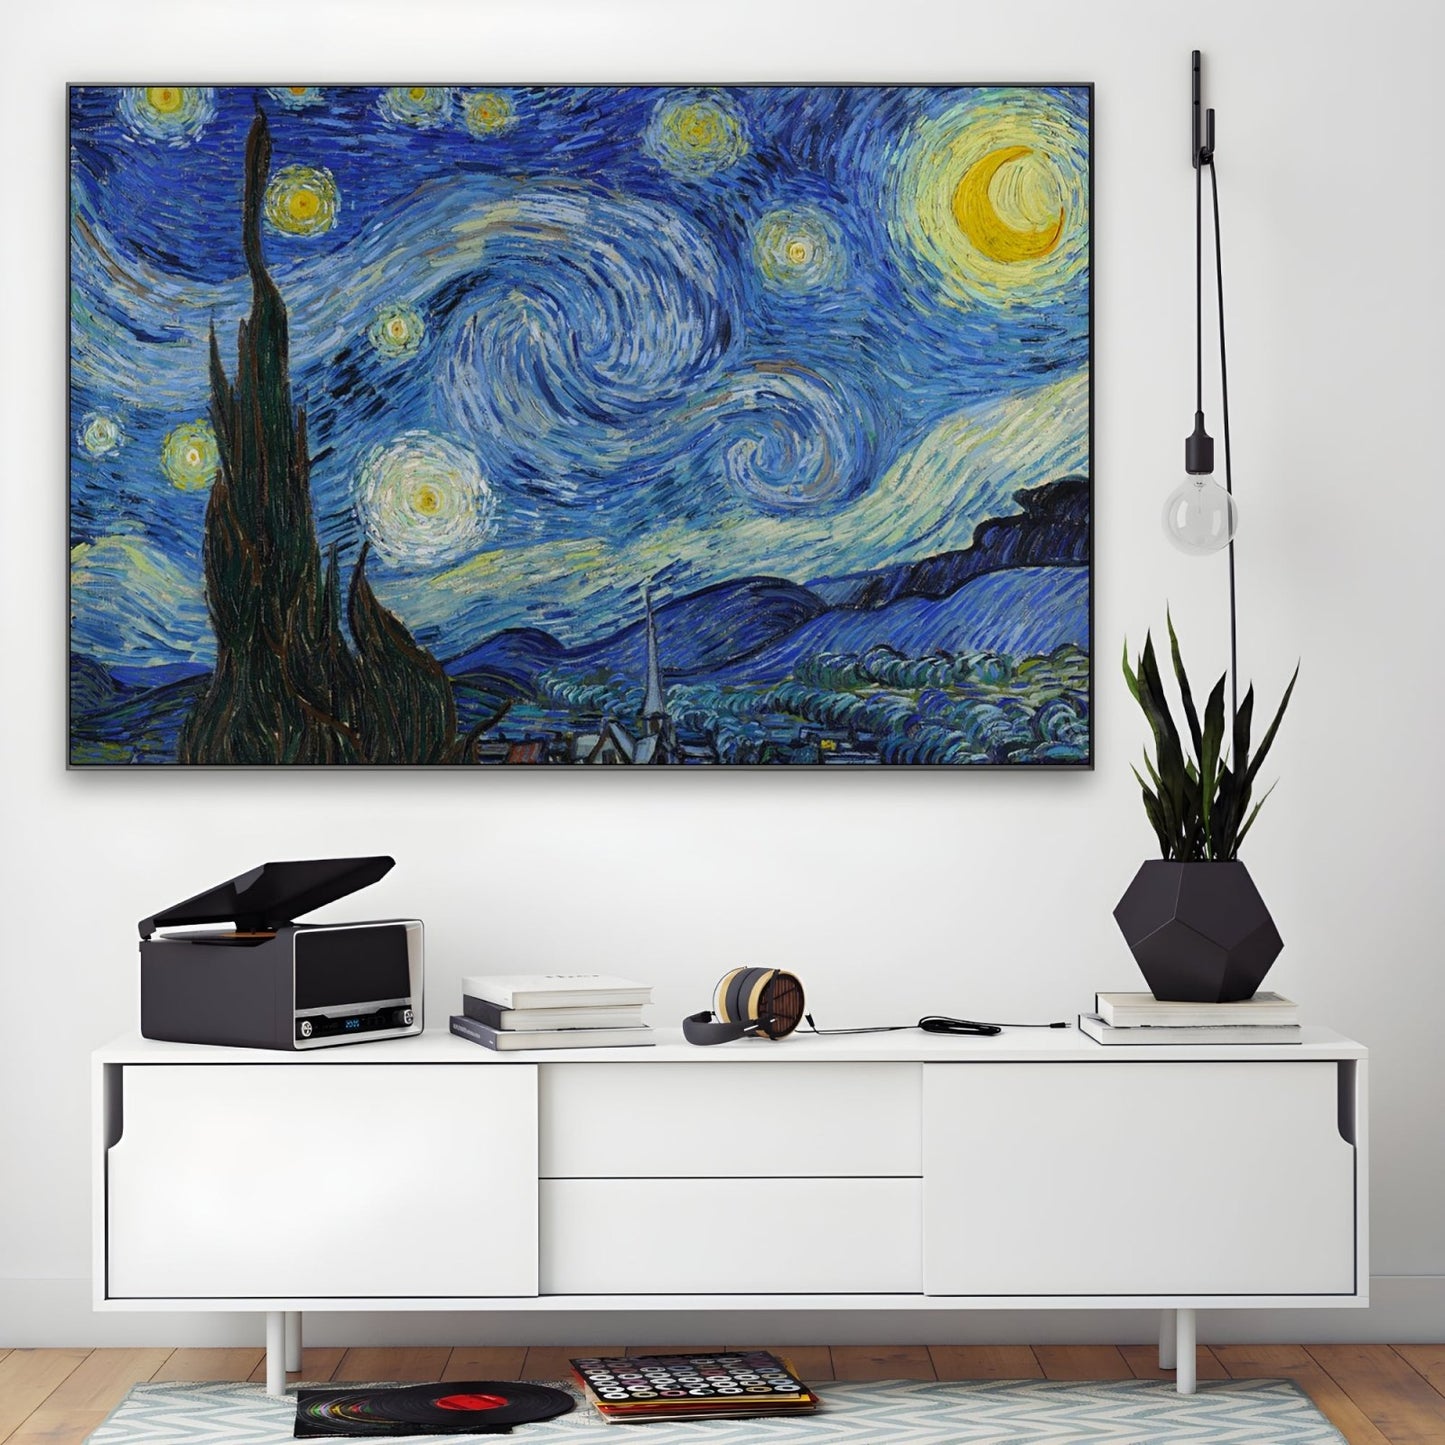 Noche estrellada, Vincent Van Gogh